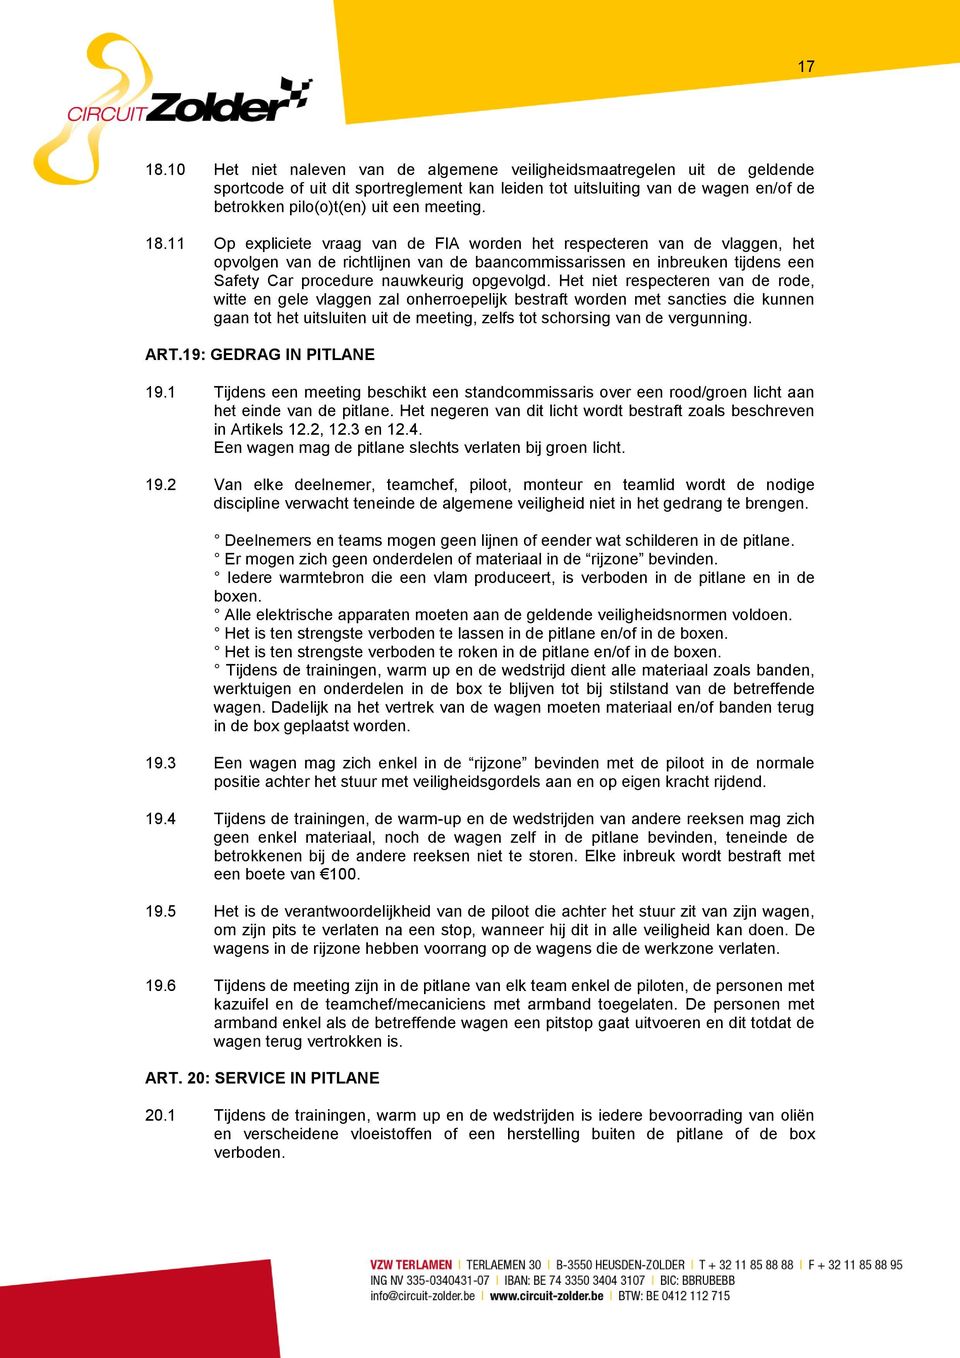 18.11 Op expliciete vraag van de FIA worden het respecteren van de vlaggen, het opvolgen van de richtlijnen van de baancommissarissen en inbreuken tijdens een Safety Car procedure nauwkeurig